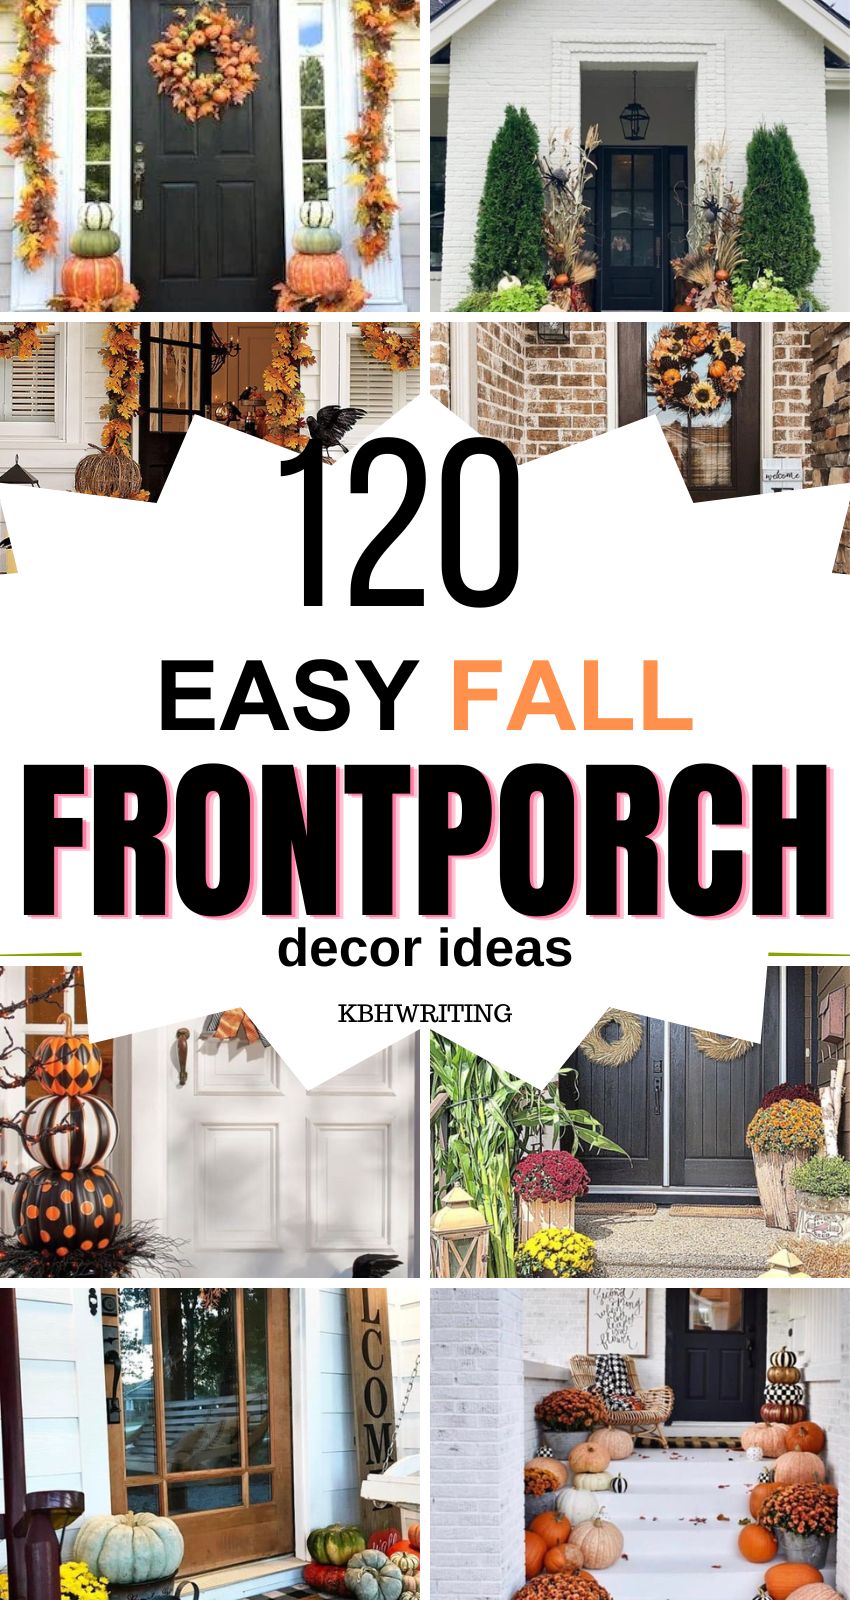 Easy DIY Fall Front Porch Decor Ideas